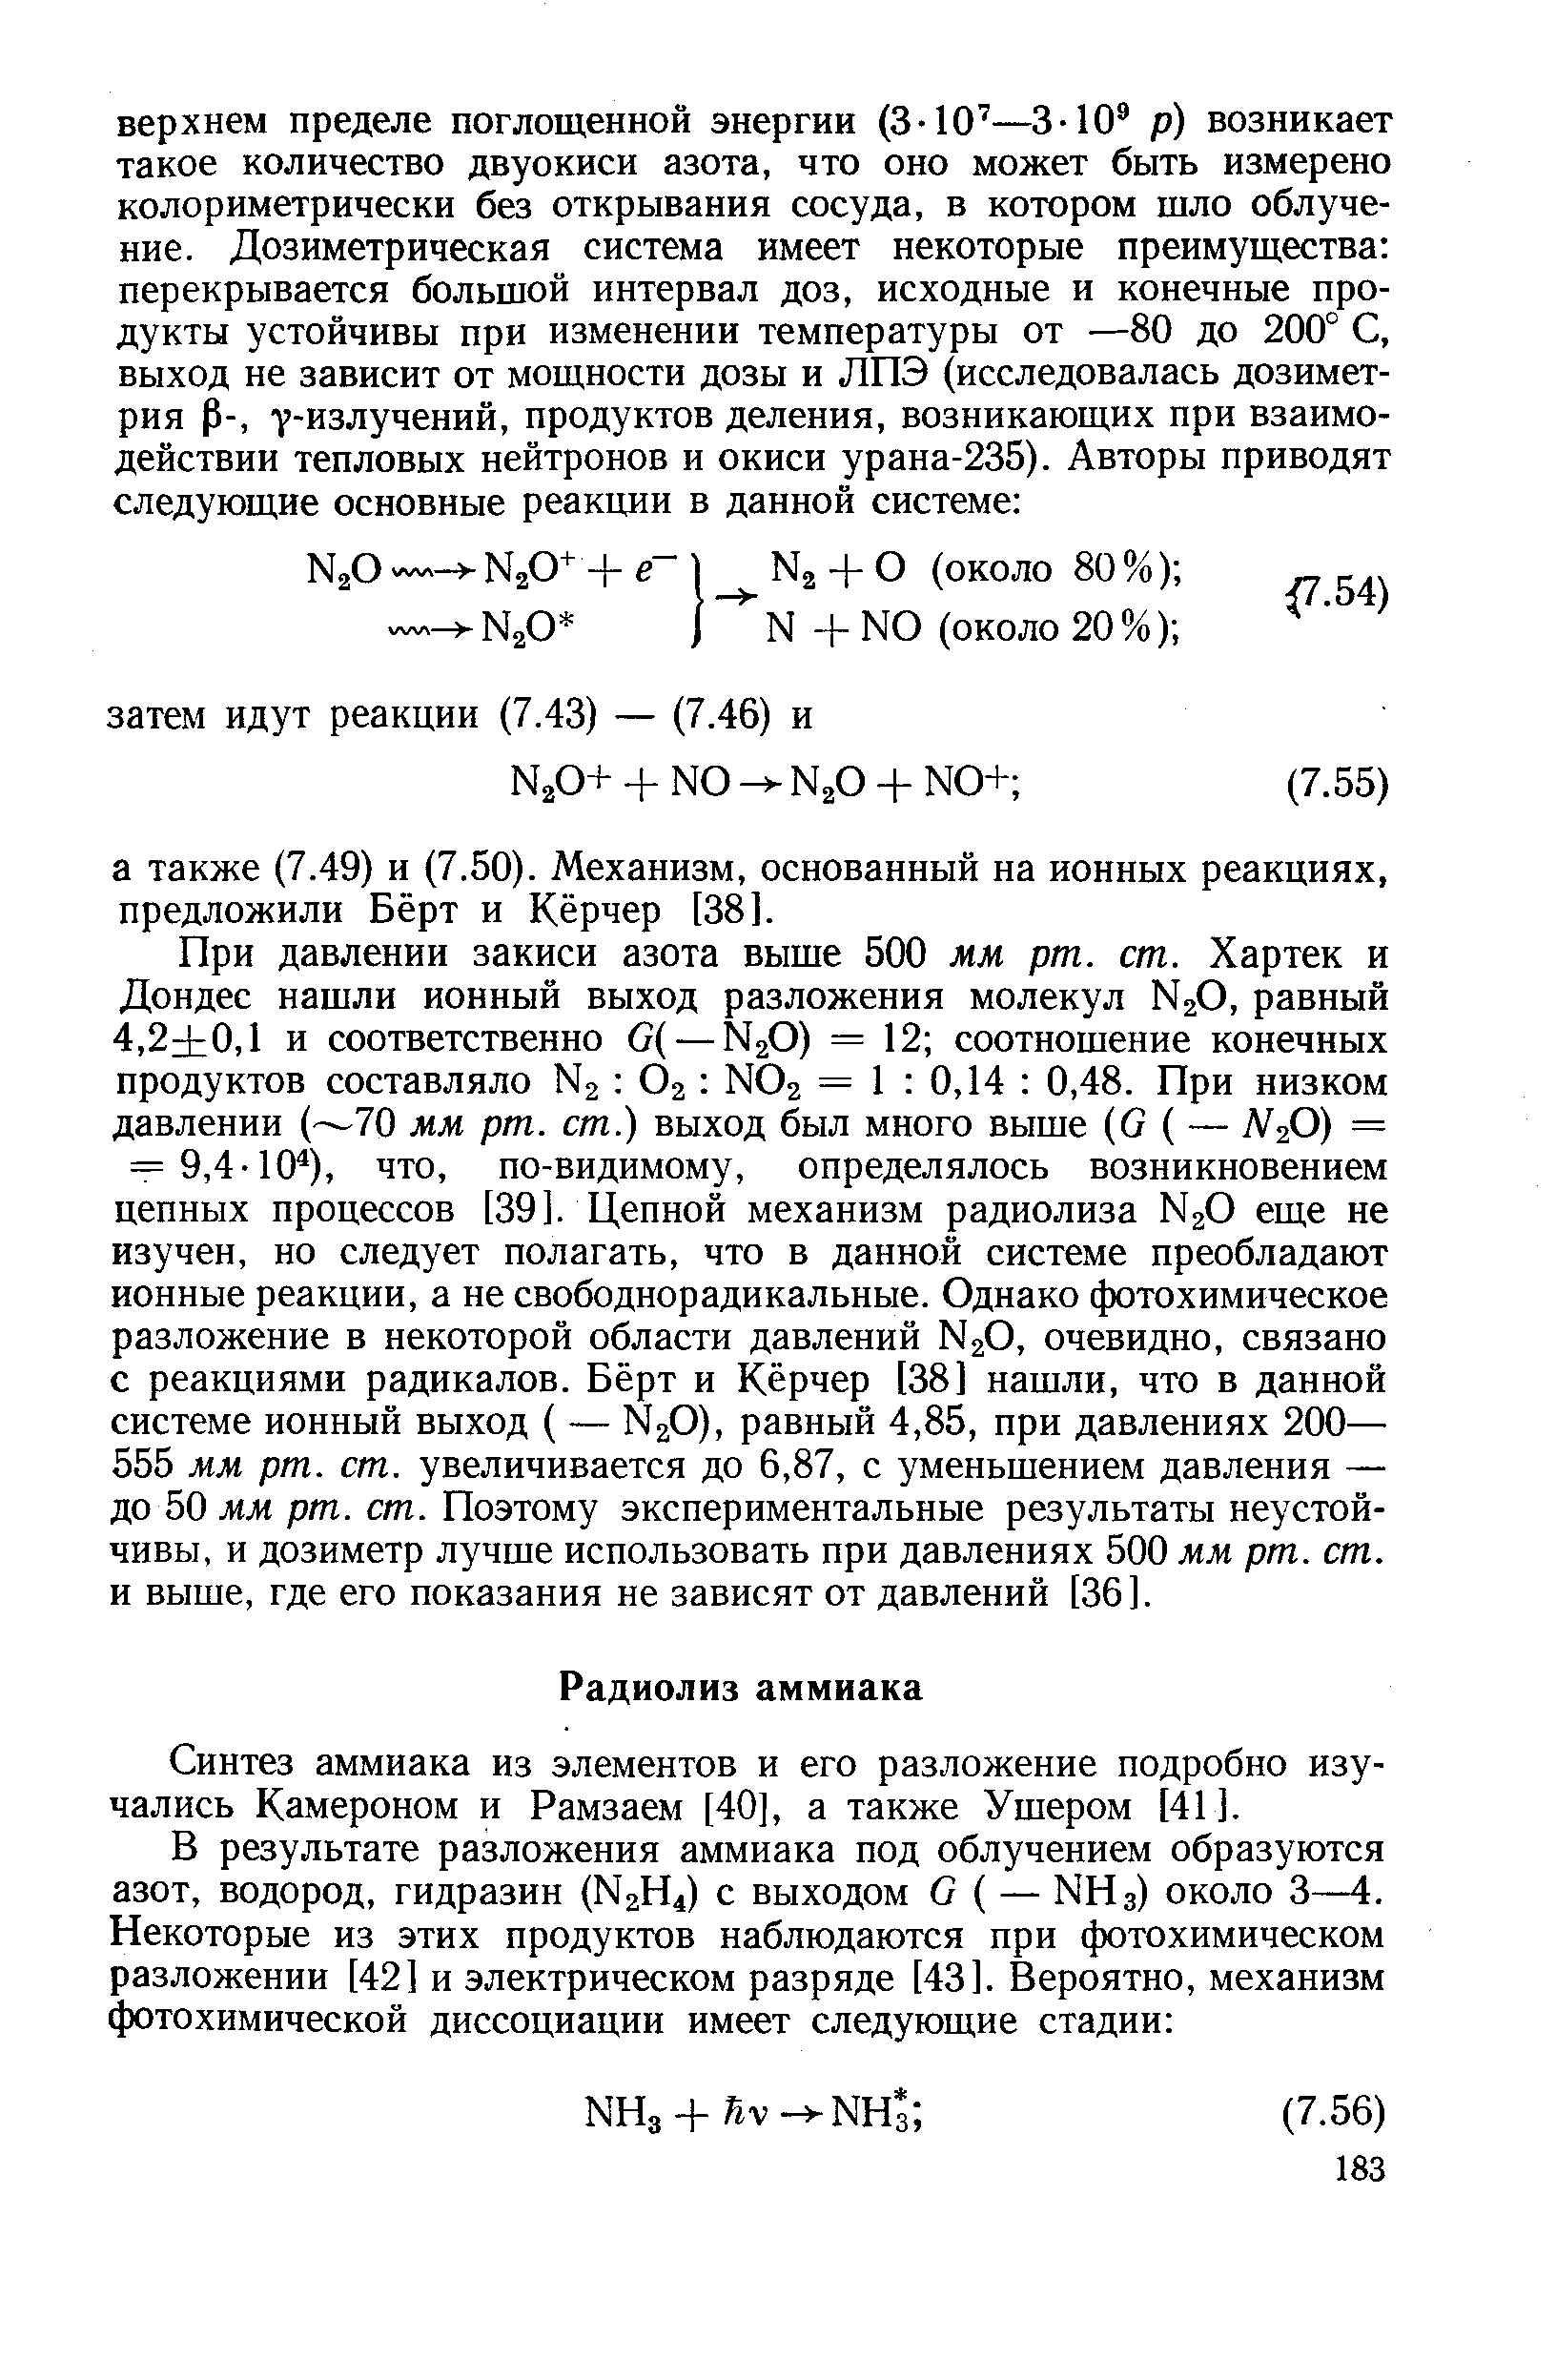 Синтез аммиака из элементов и его разложение подробно изучались Камероном и Рамзаем [40], а также Ушером [41 ].